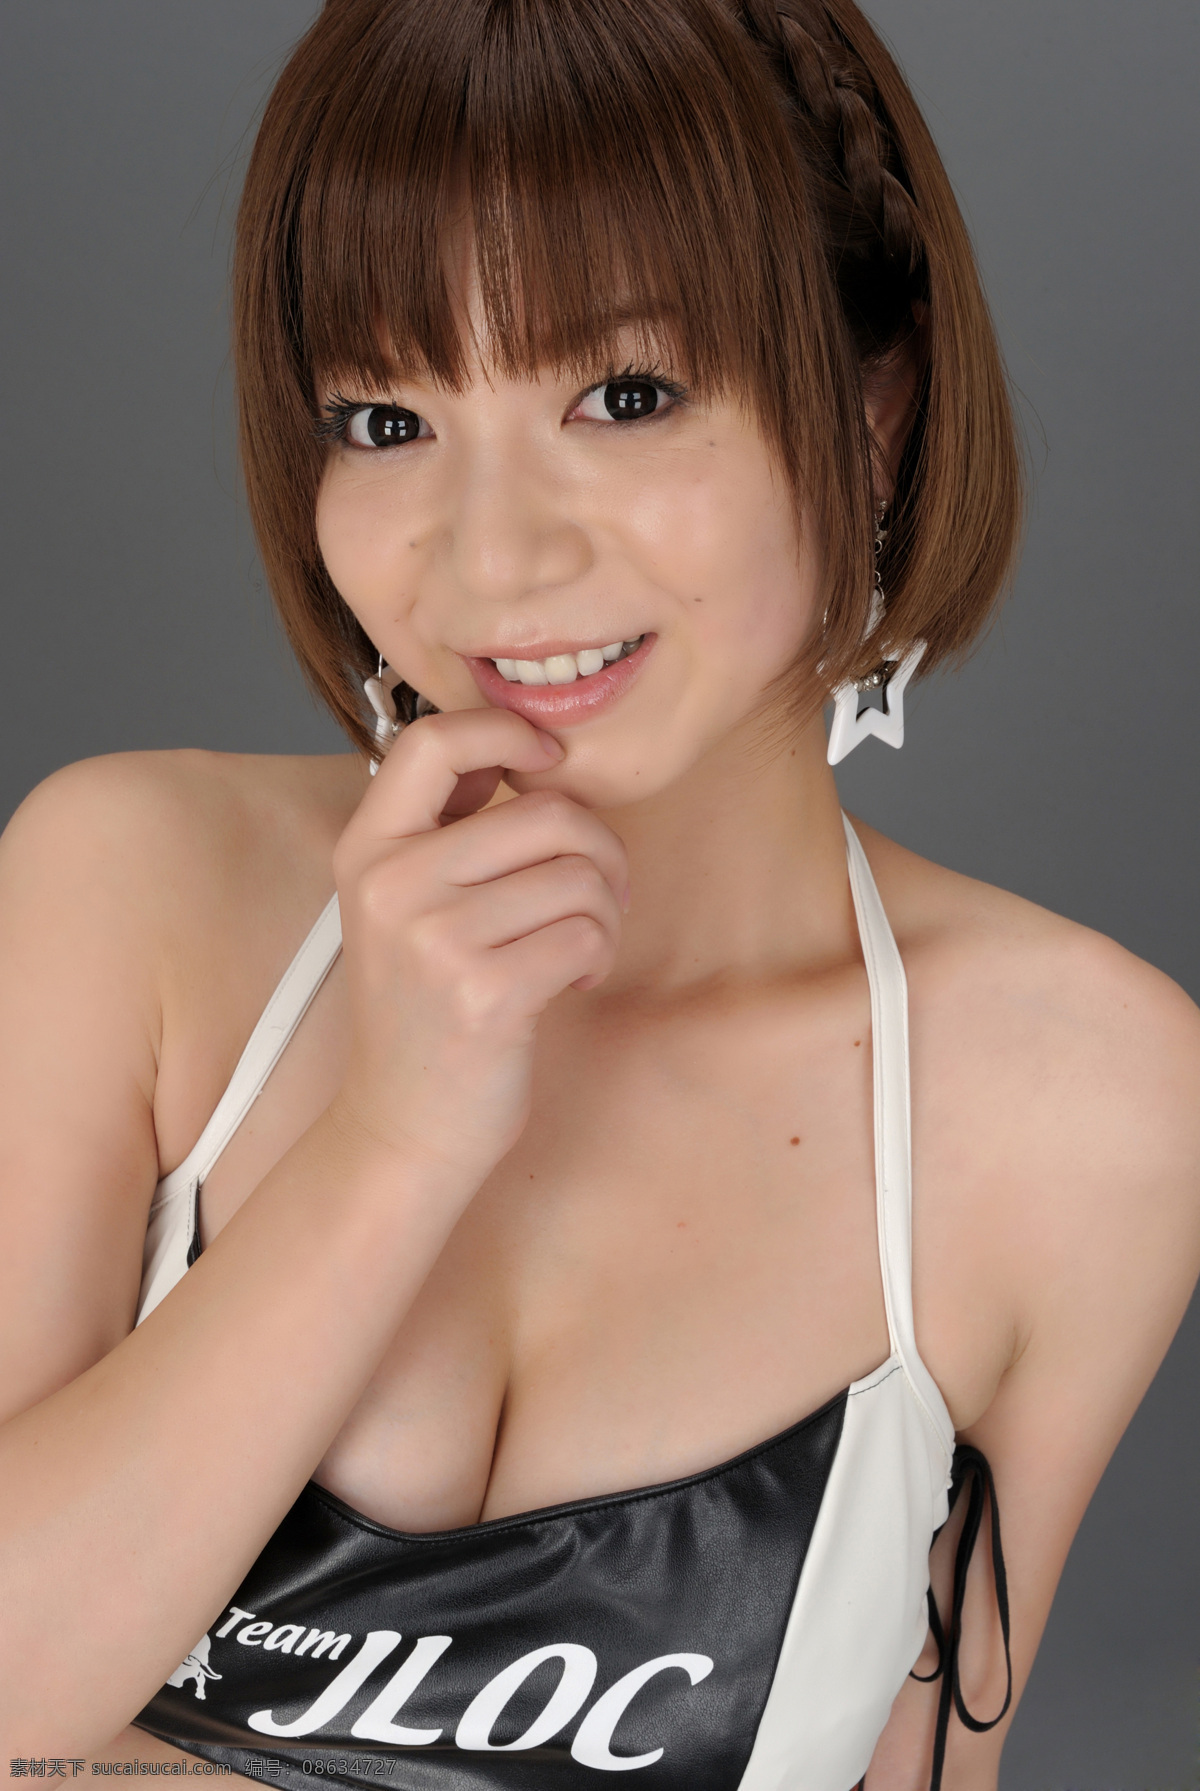 日本美女模特 亚洲美女 广告模特 超人气 日本妹妹 邻家 内衣 女孩 漂亮 美丽 写真集 人物摄影 人物图库